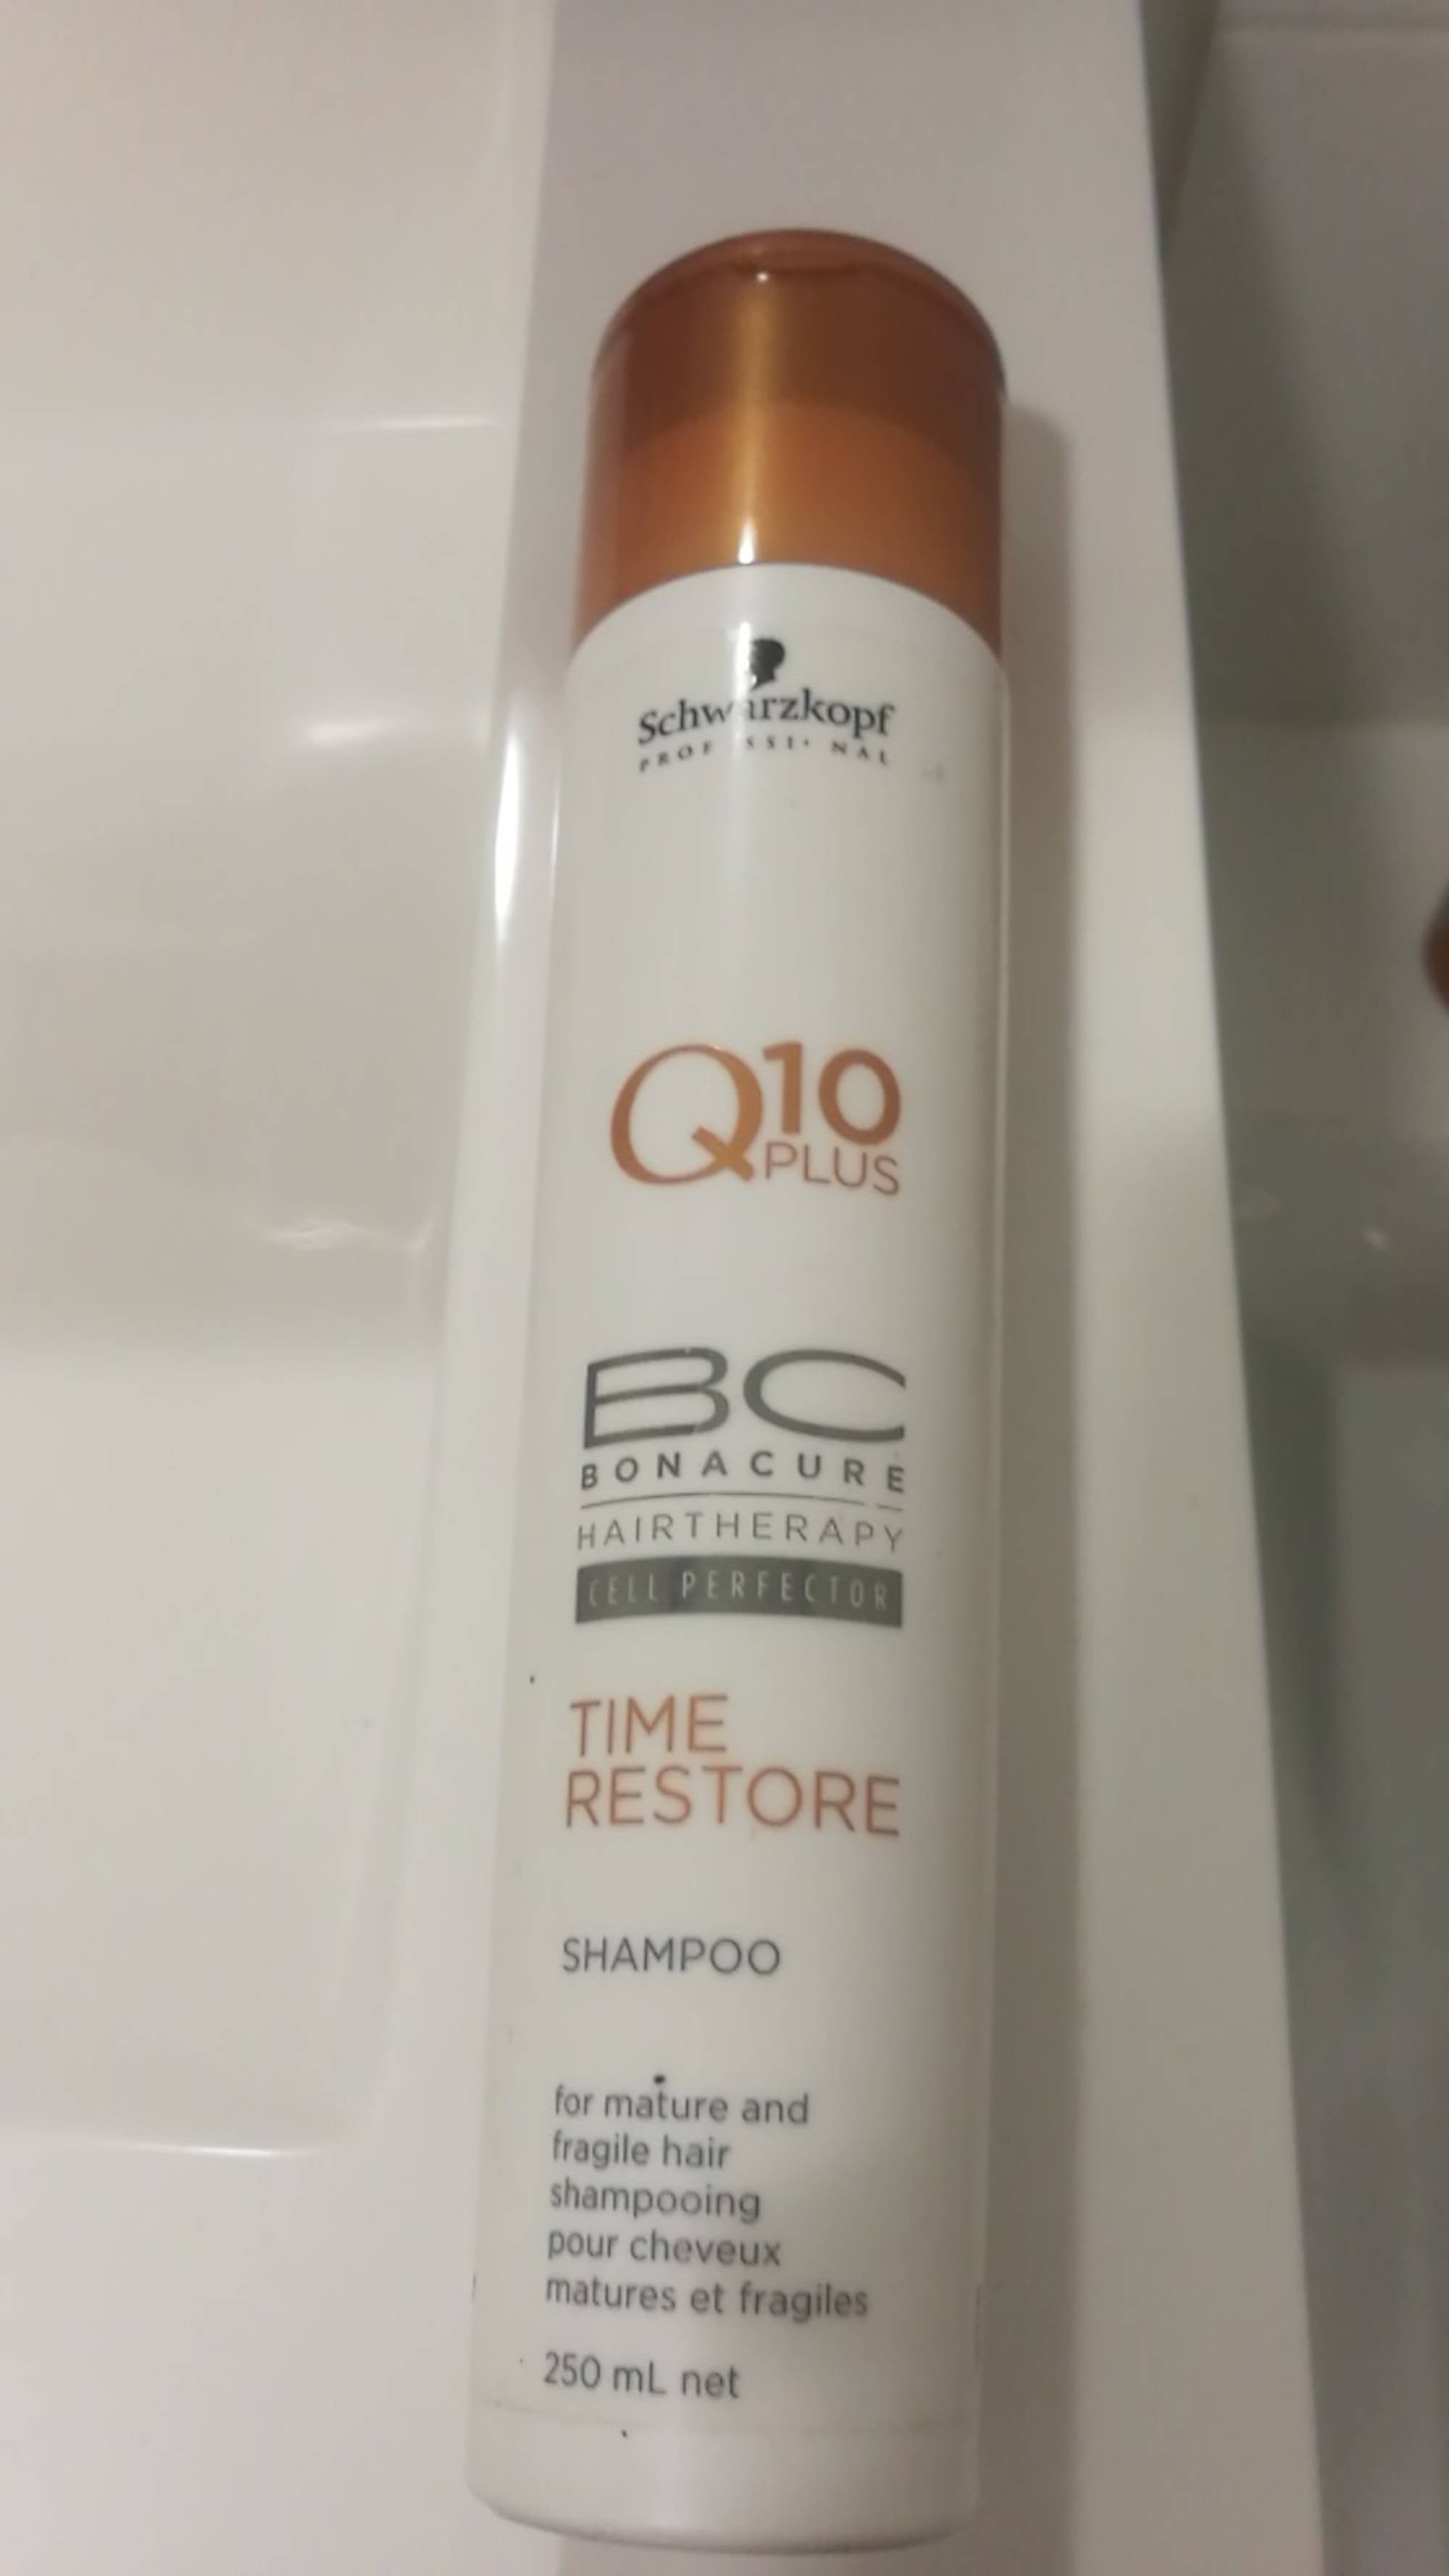 SCHWARZKOPF - Q10 plus Time Restore - Shampooing